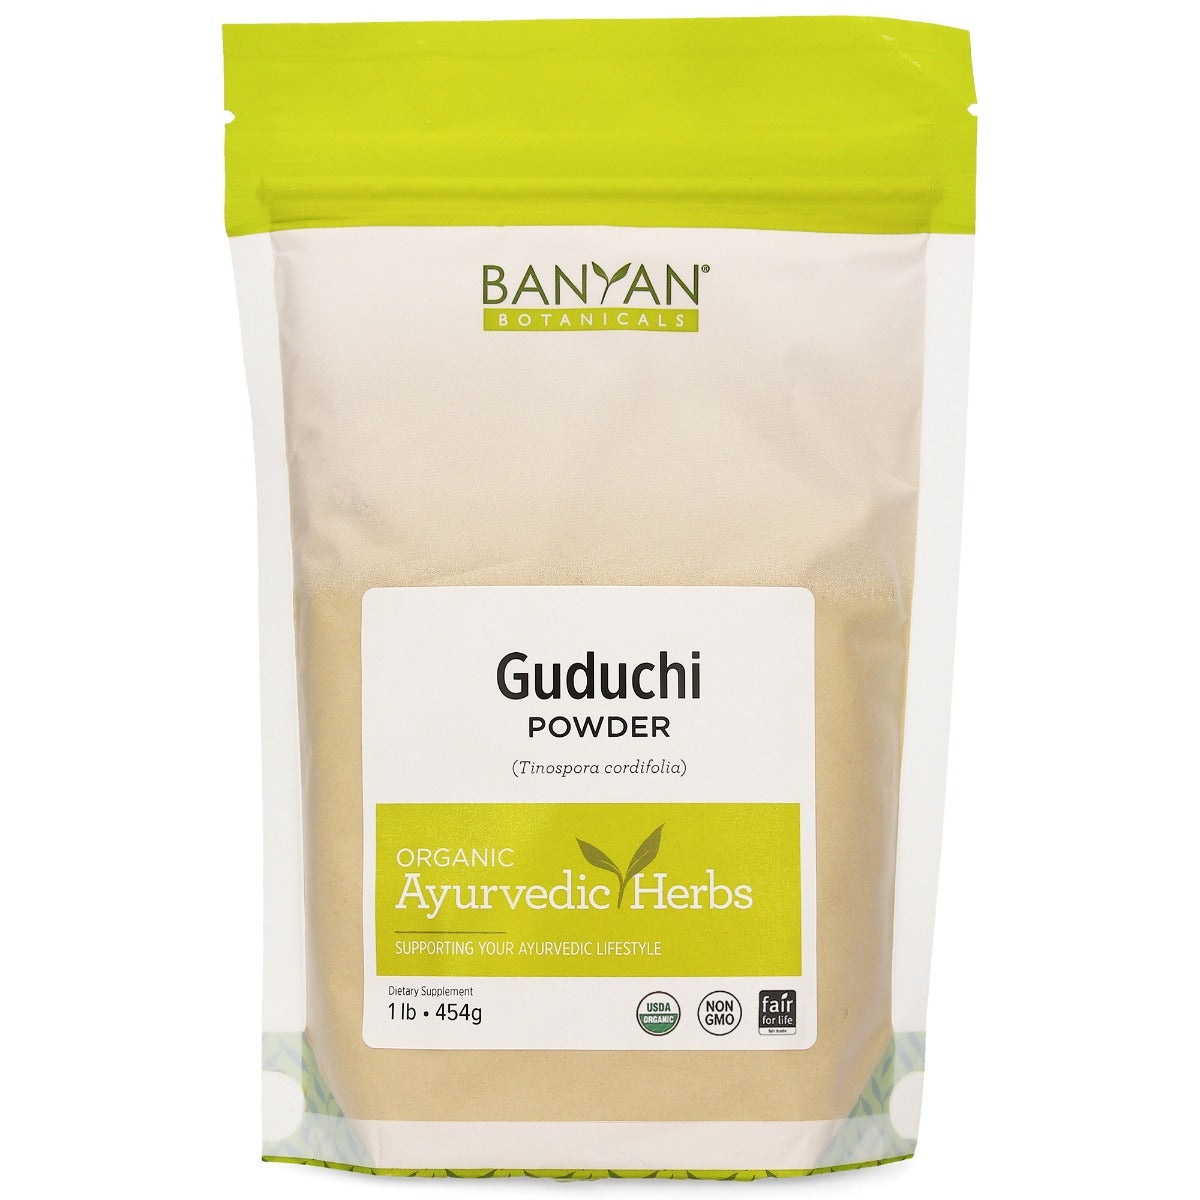 Guduchi powder